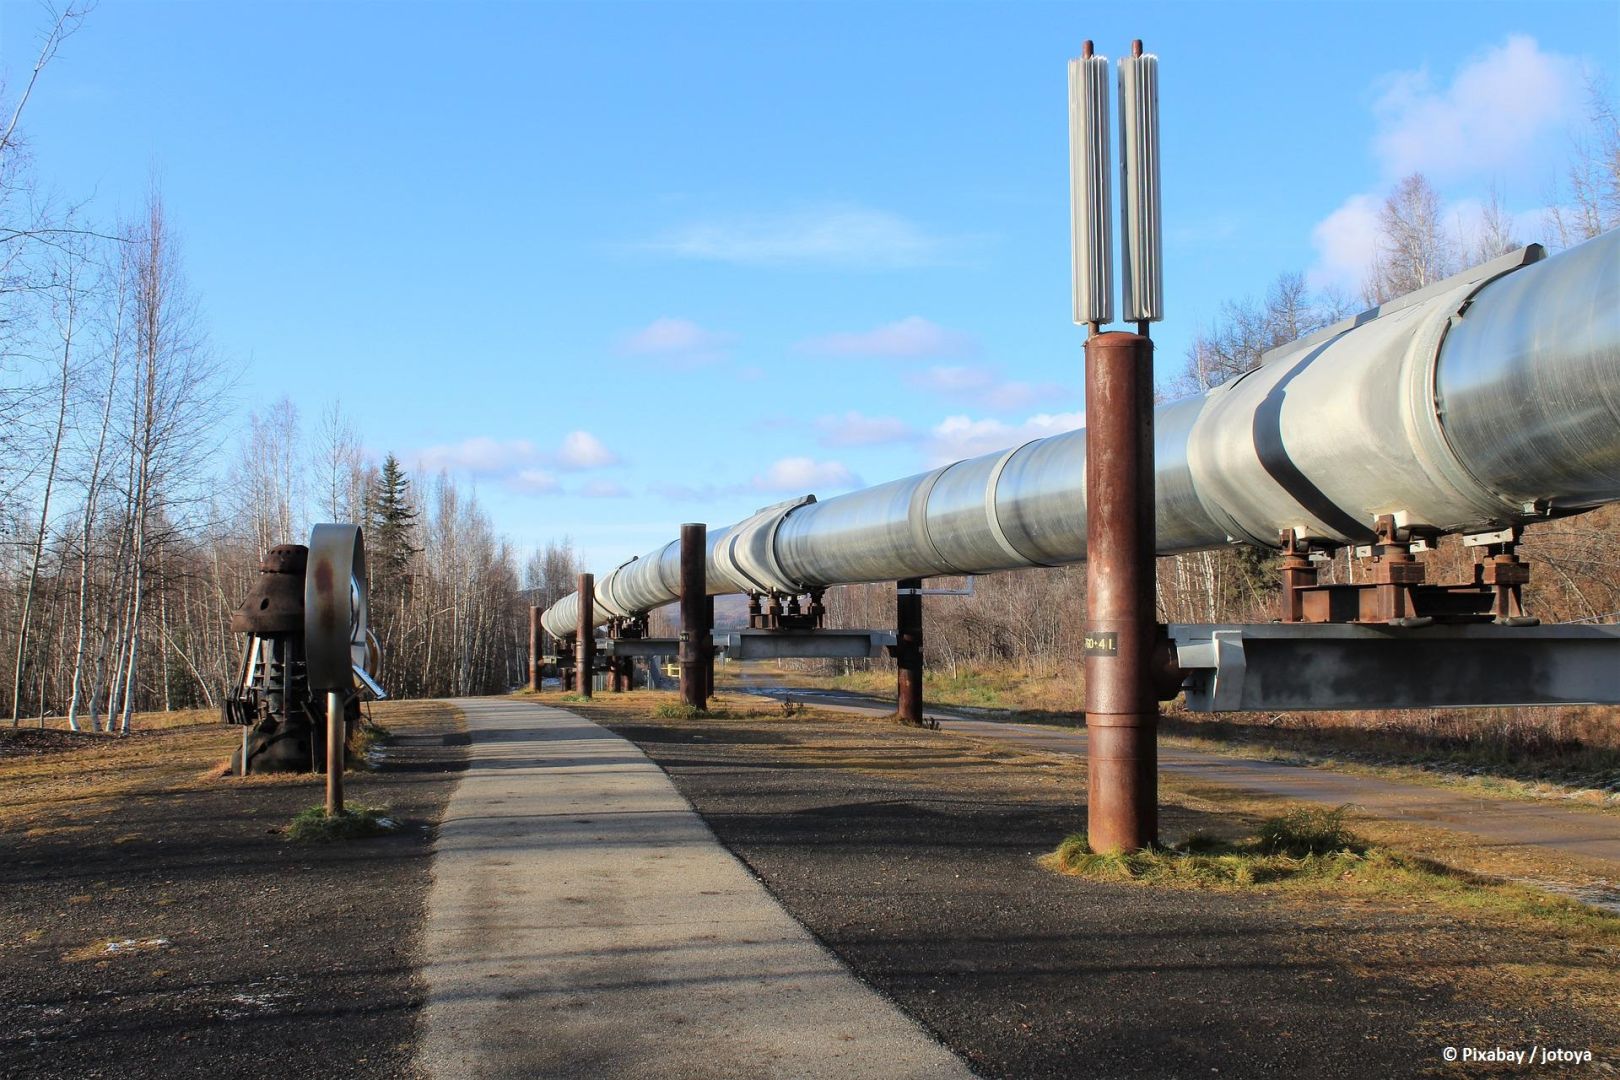 Kasachstan überwacht weiterhin die Einhaltung seiner Verpflichtungen im Rahmen des OPEC+-Abkommens